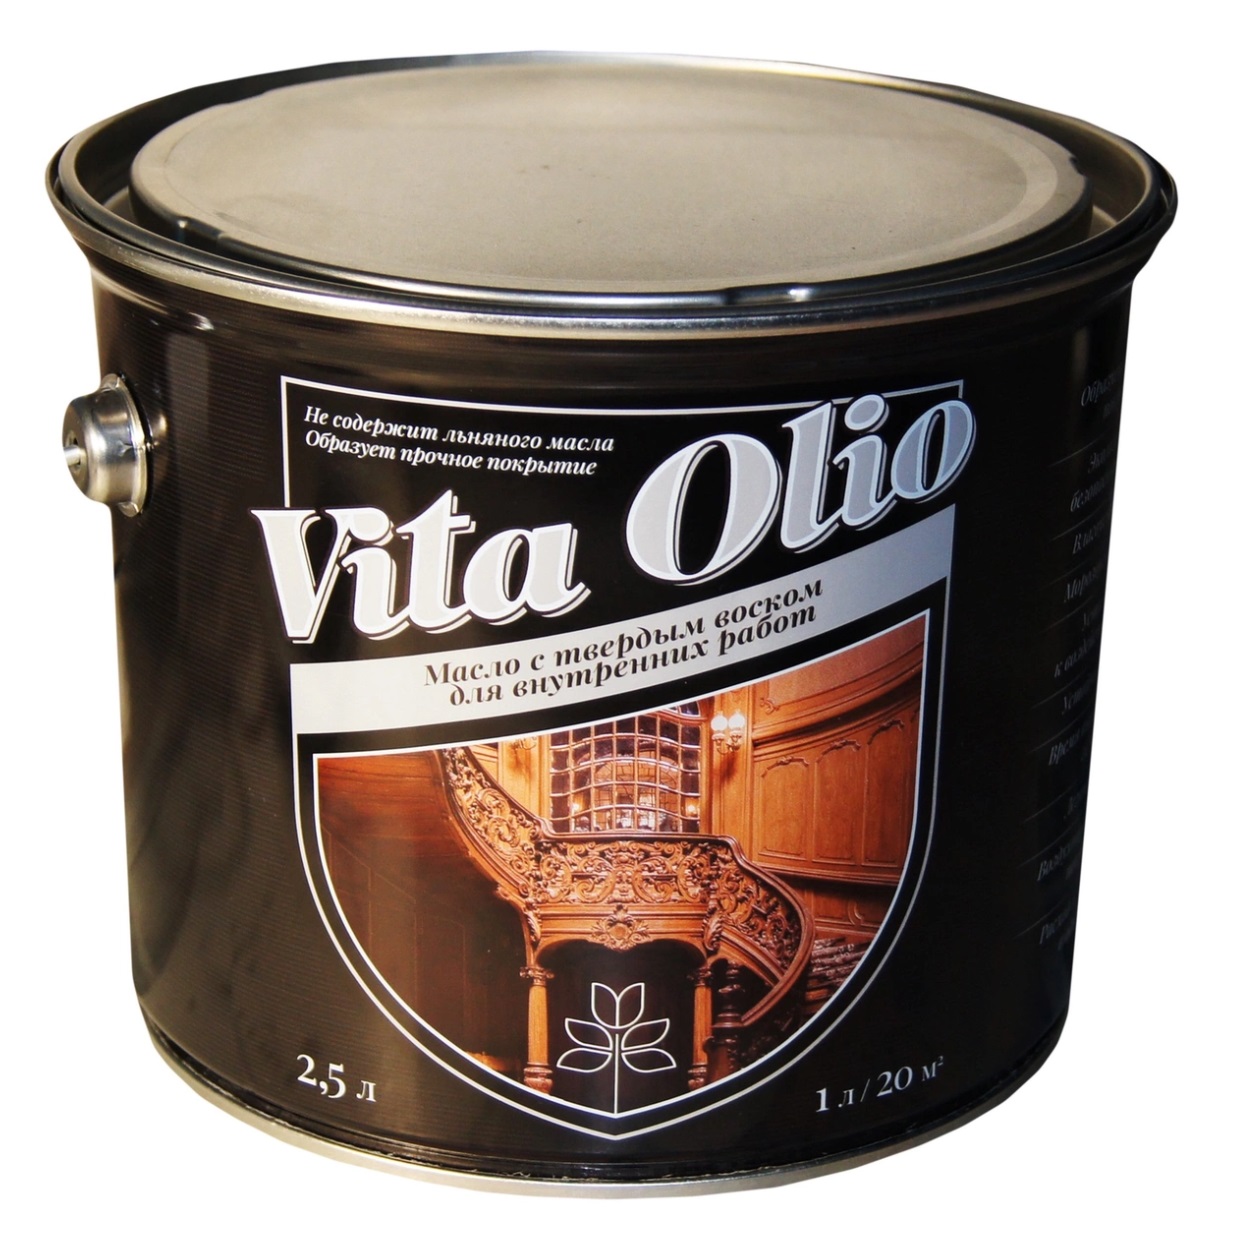 Масло VITA OLIO для внутренних работ с твердым воском шелковисто-матовое цвет беленый дуб. 2,5 л.